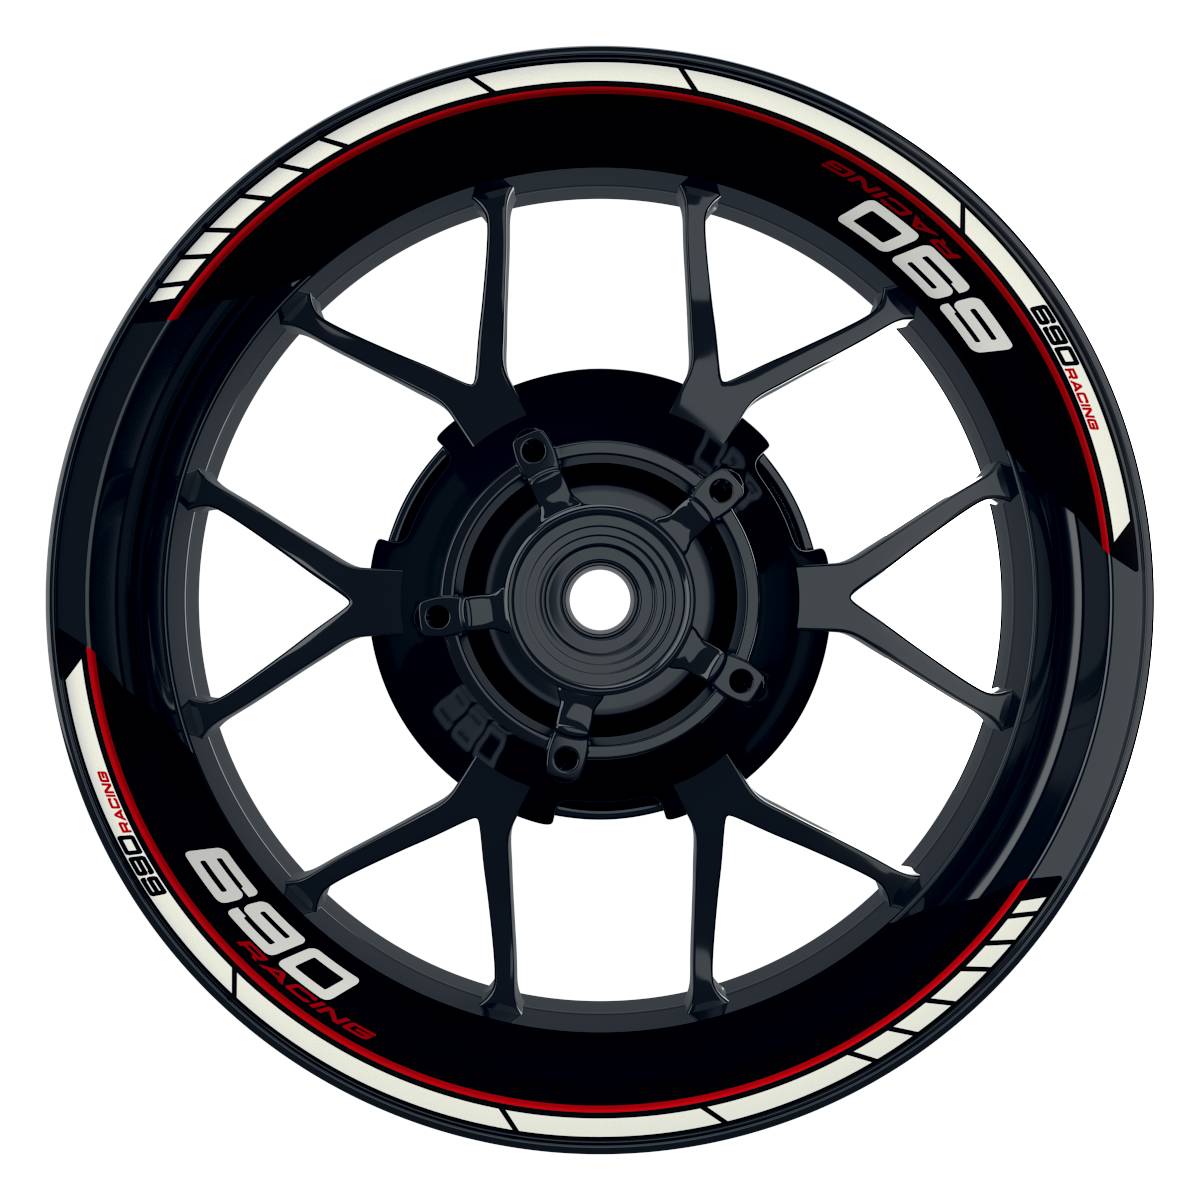 KTM Racing 690 Clean schwarz rot Frontansicht